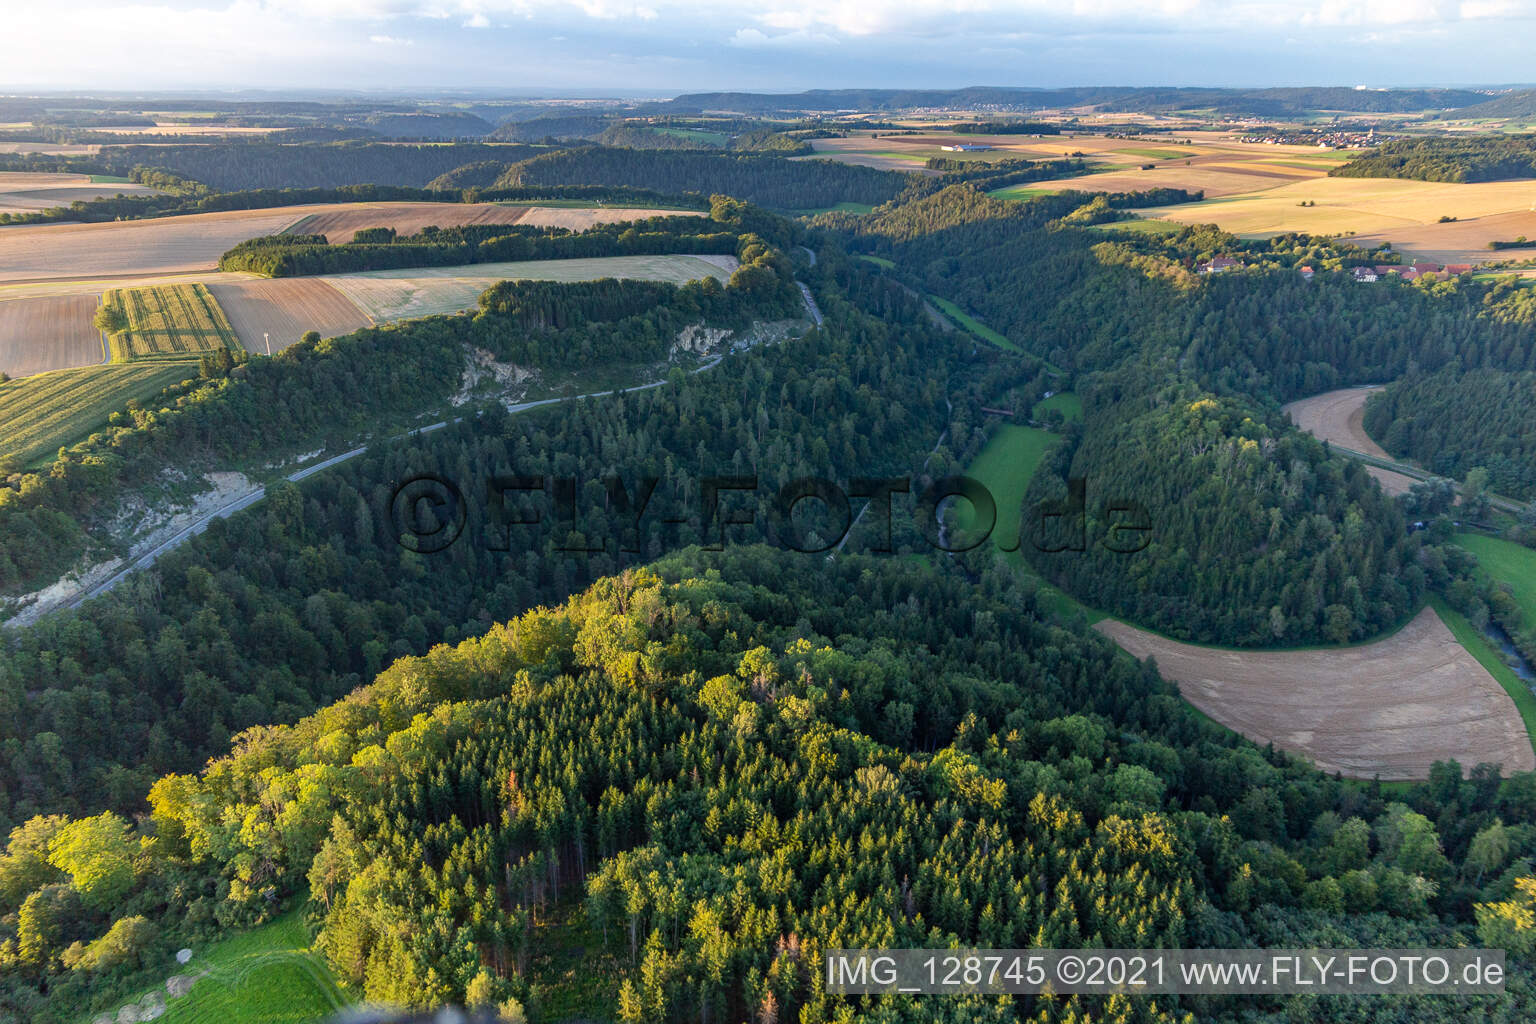 Neckar valley loop around Hohenstein Castle in Dietingen in the state Baden-Wuerttemberg, Germany